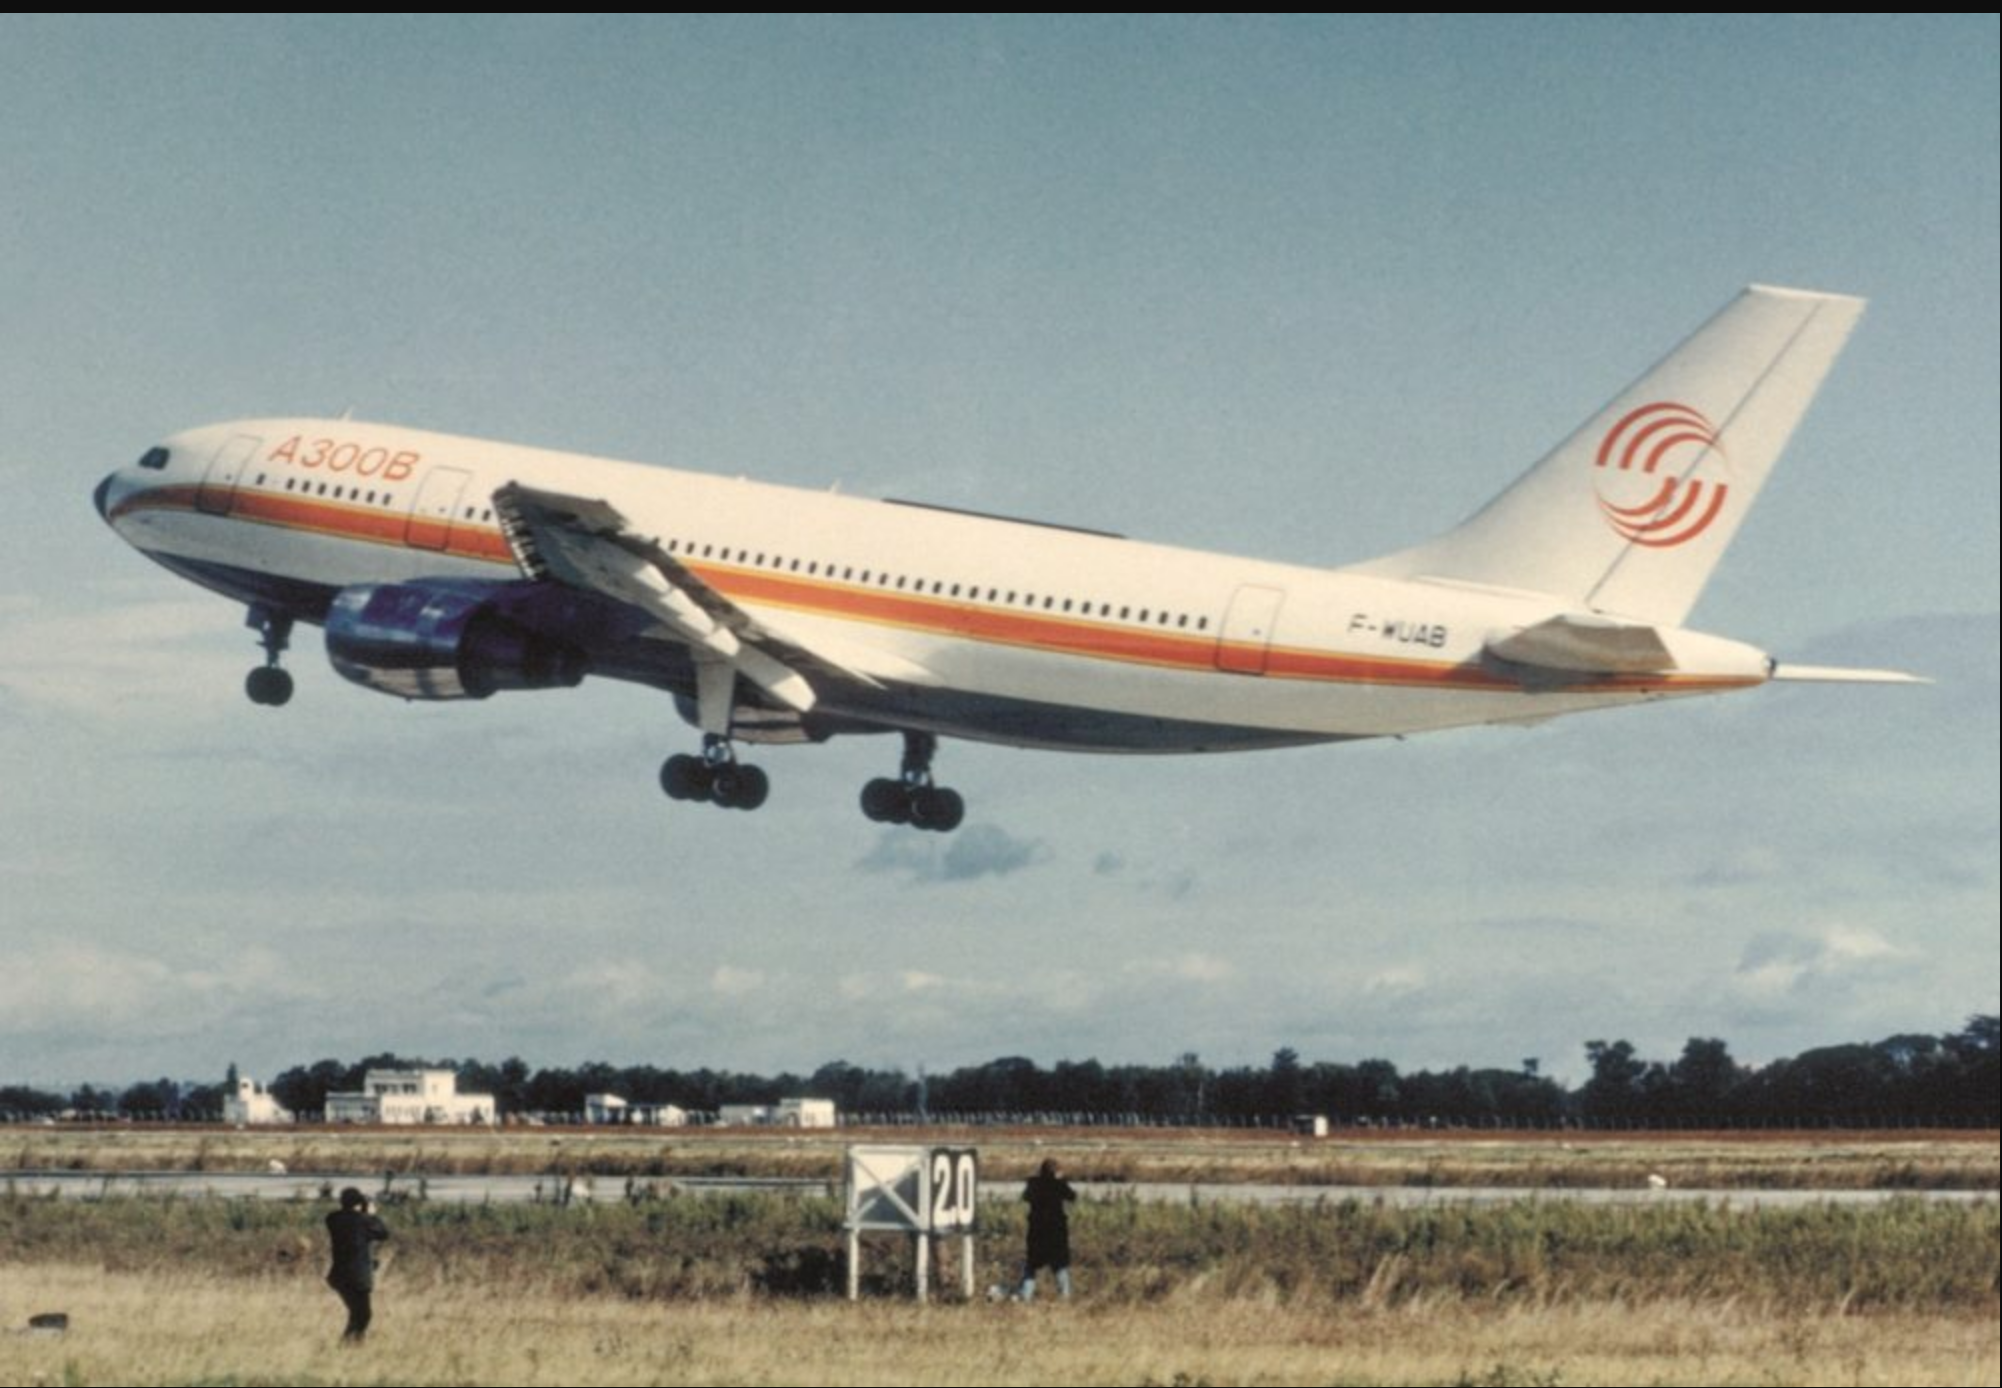 Toulouse célèbre les 50 ans du premier vol de l'A300, point de départ du succès d'Airbus